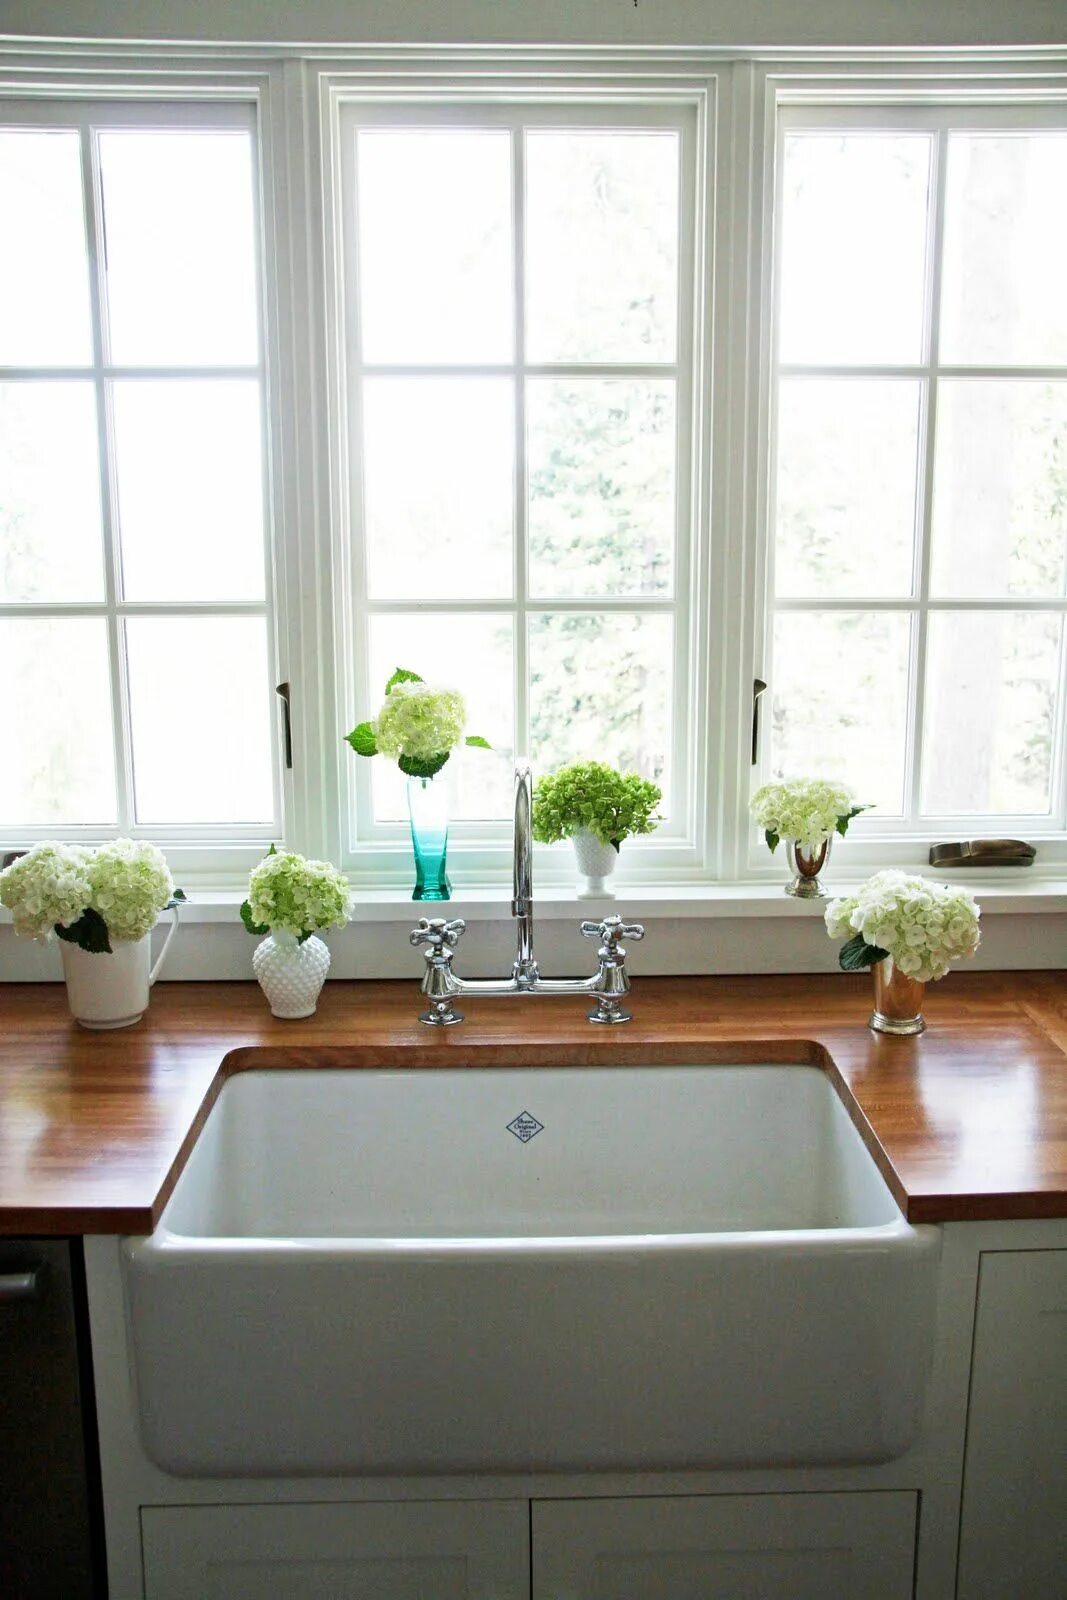 Мытье подоконников. Кухня с окном возле мойки. Раковина возле окна. Кухня с мойкой у окна. Раковина под окном на кухне.